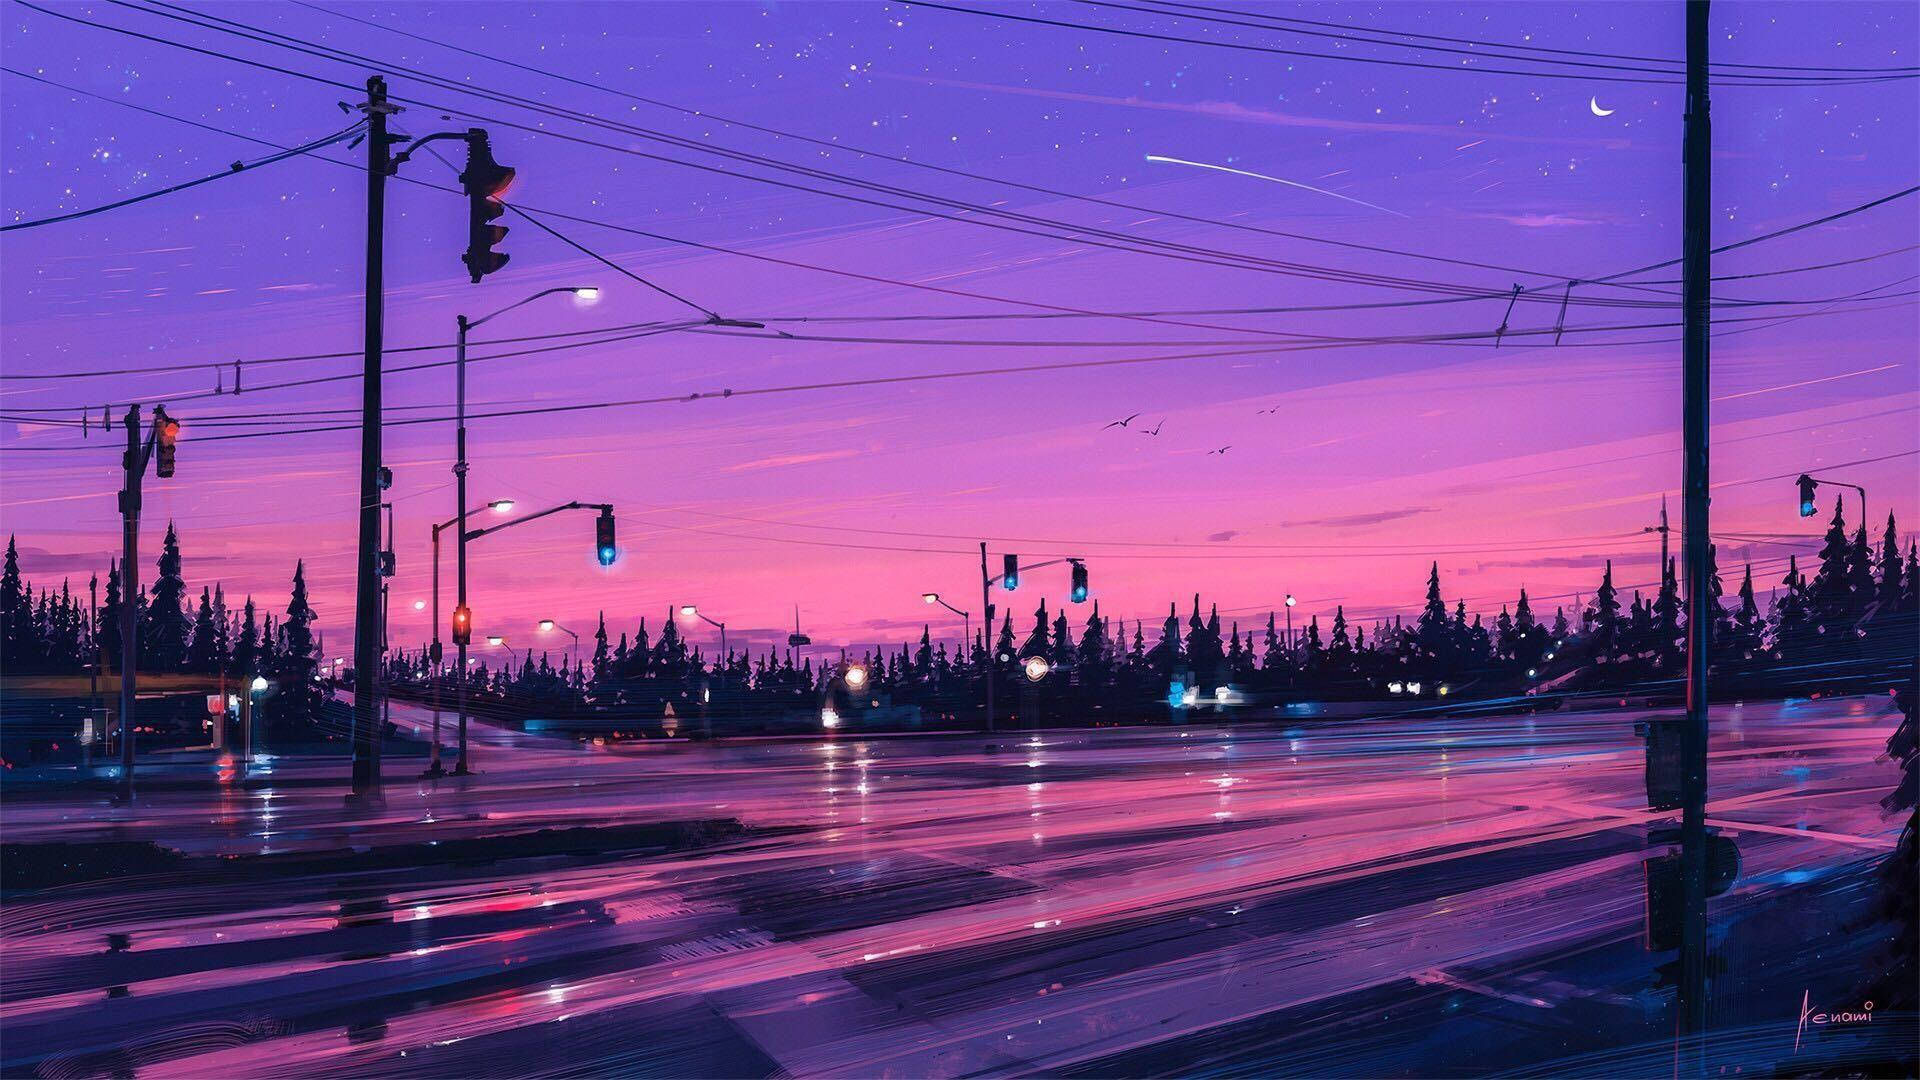 Et maleri af en by om natten med lys og ledninger. Wallpaper